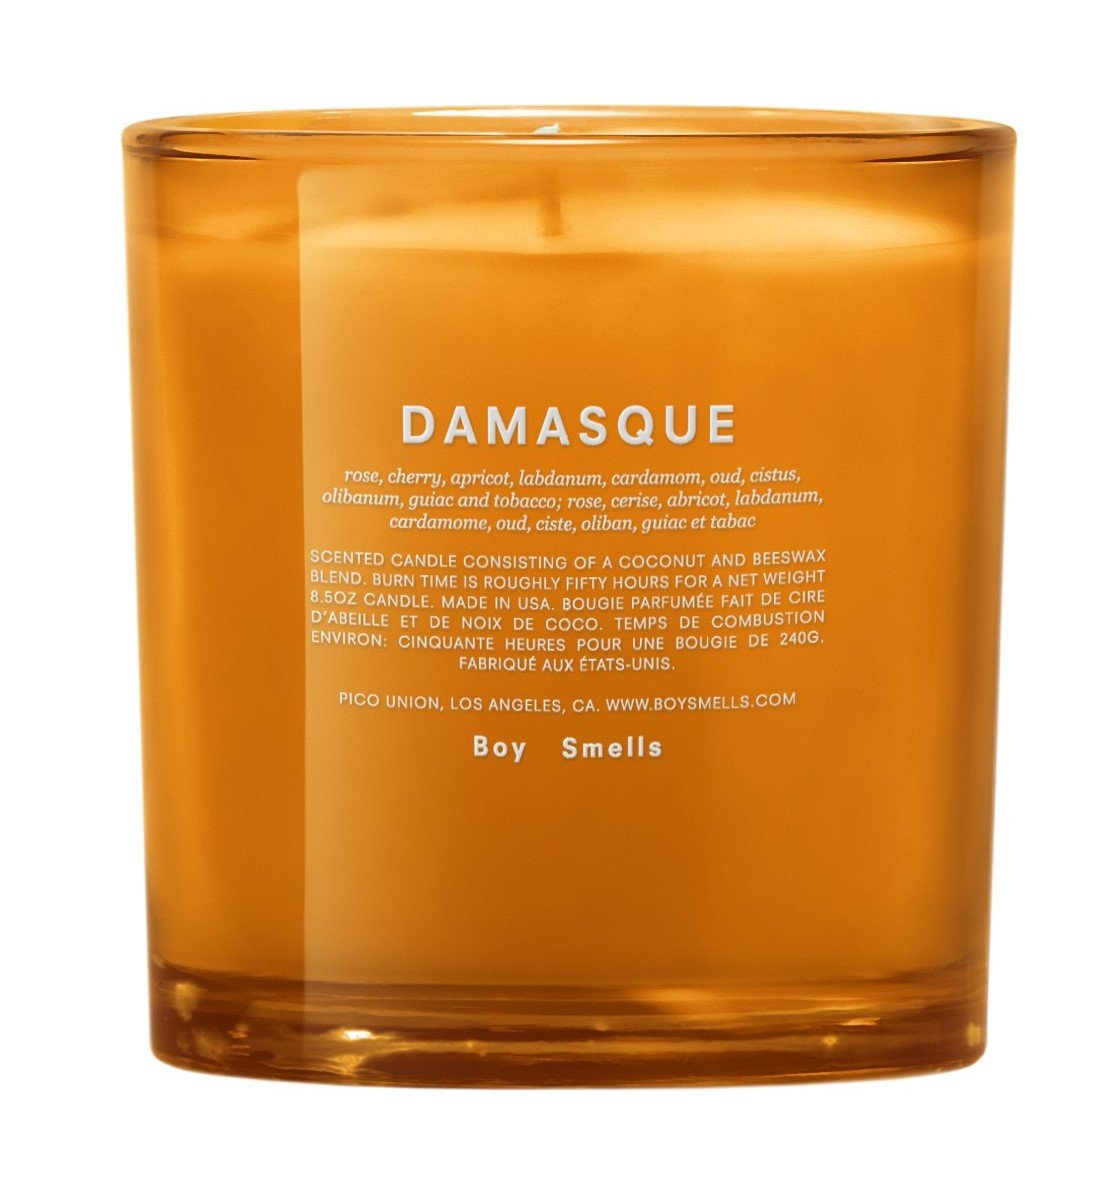 Damasque Candle (Secret Garden Collection)